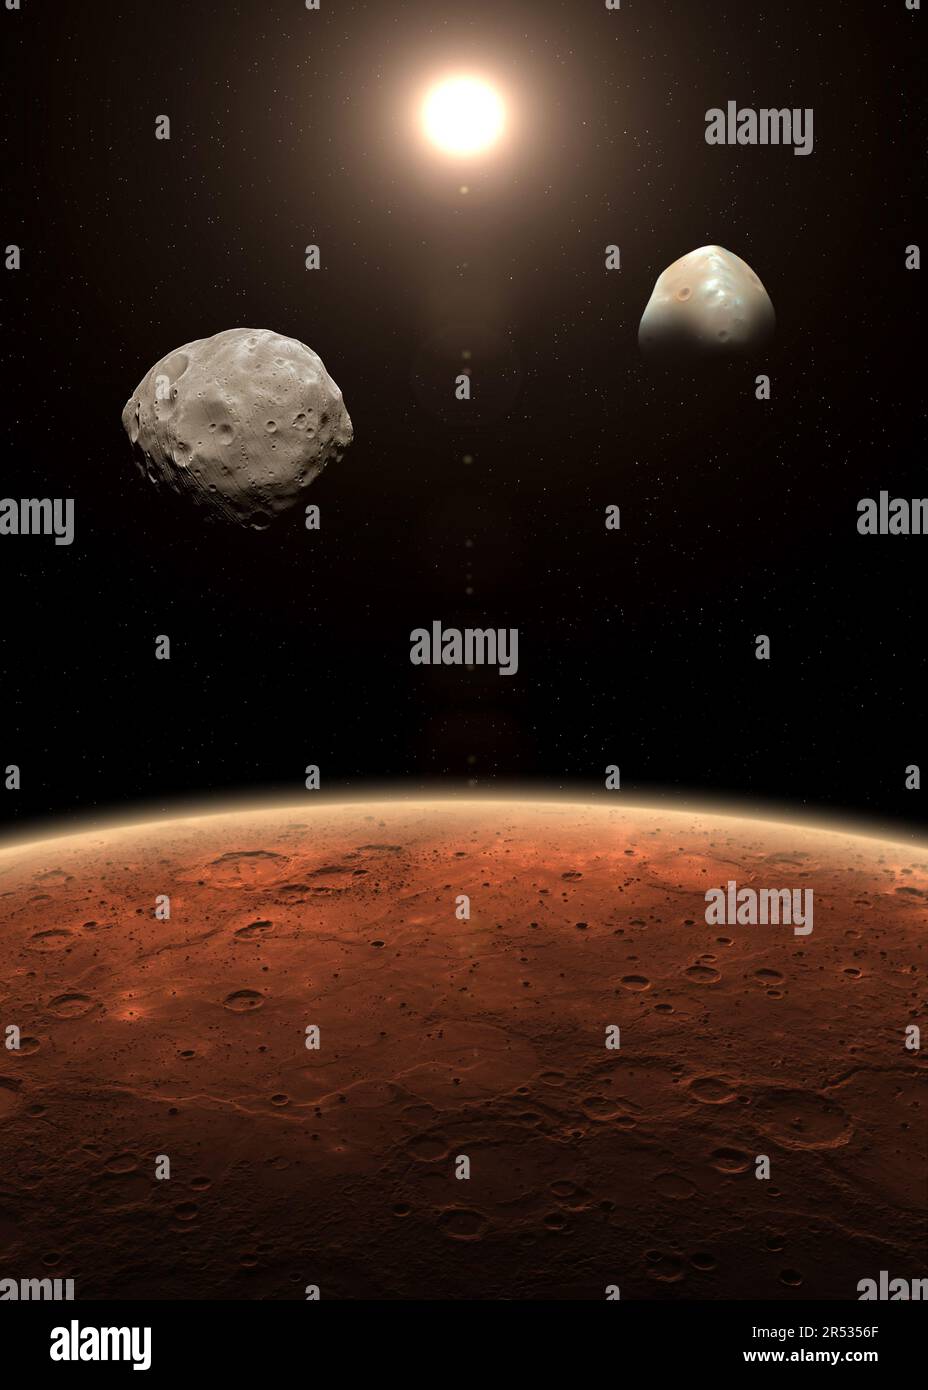 Marte e i suoi due satelliti naturali Deimos e Phobos. Marte è un pianeta rosso del sistema solare. Marte, Phobos e Deimos. Elementi forniti dalla NASA. Foto Stock